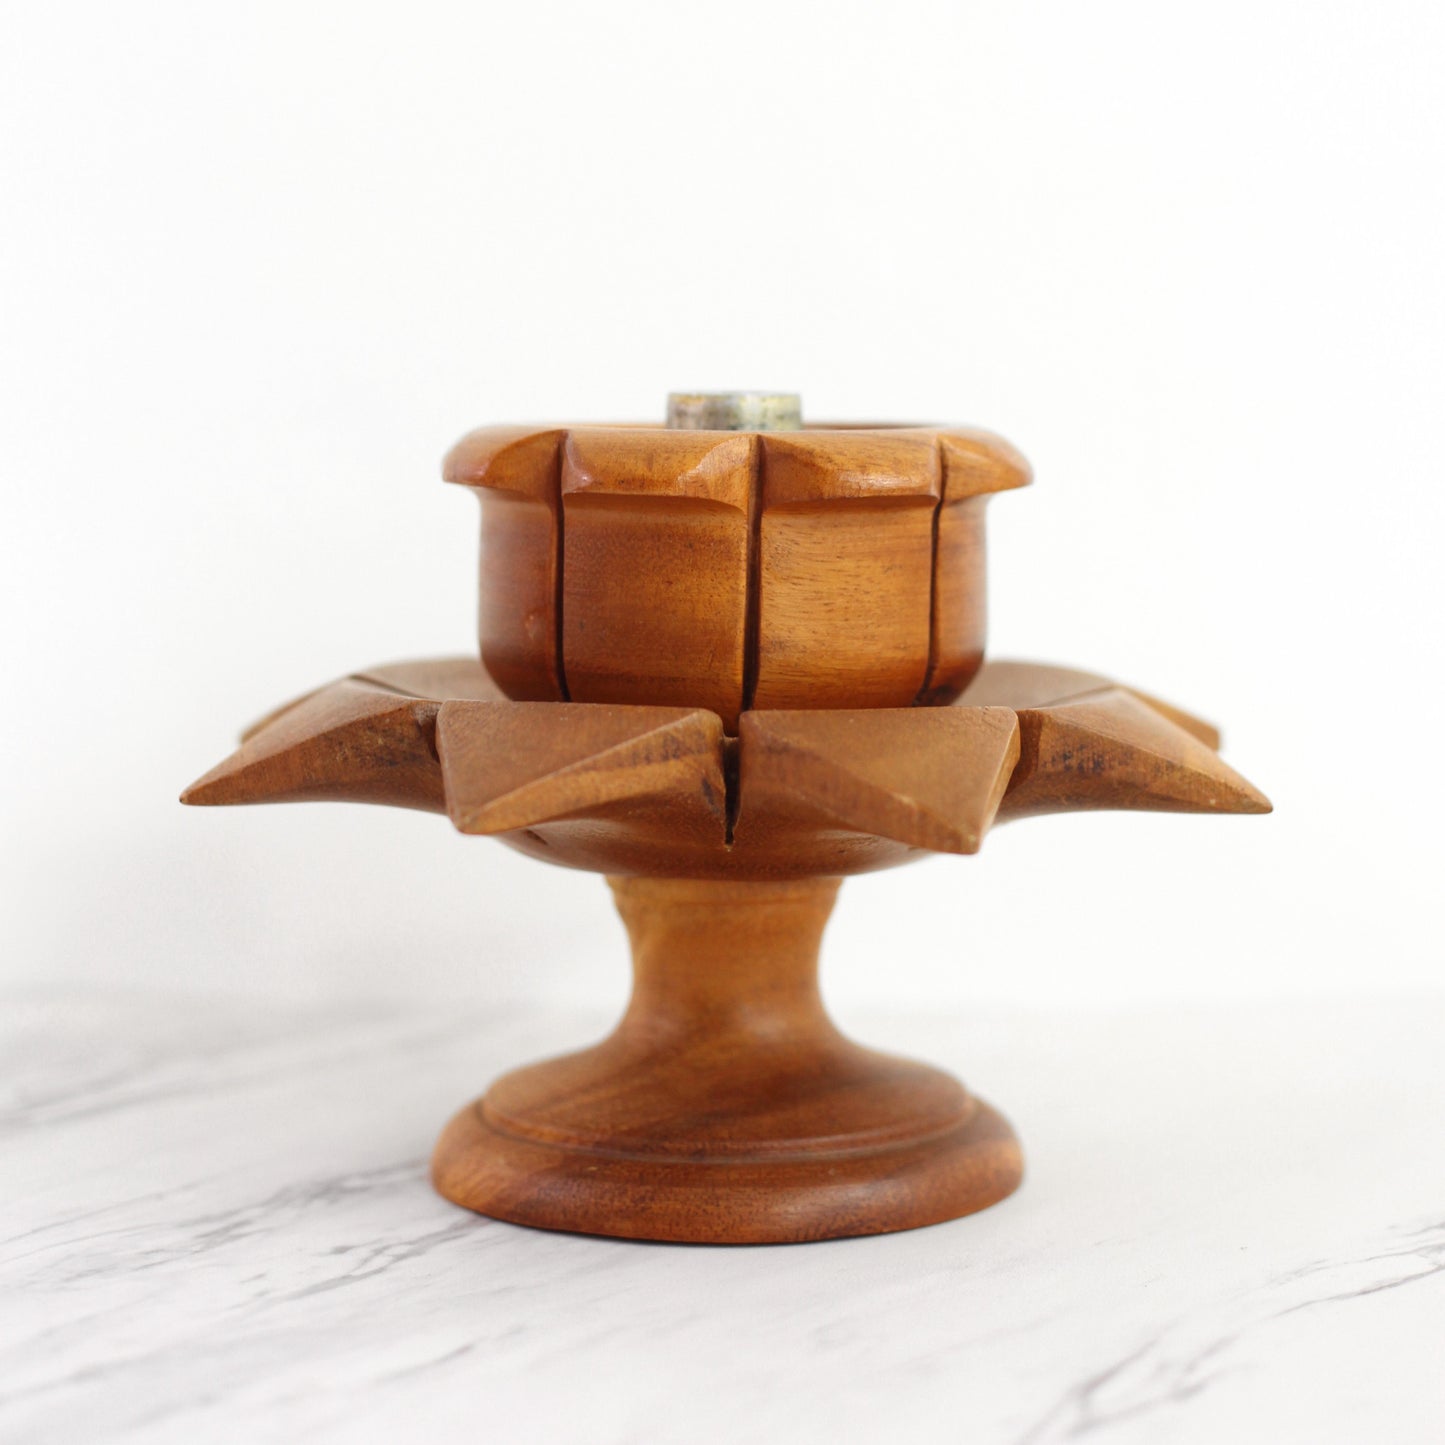 SOLD - Vintage Wooden Flower Pedestal Candle Holder